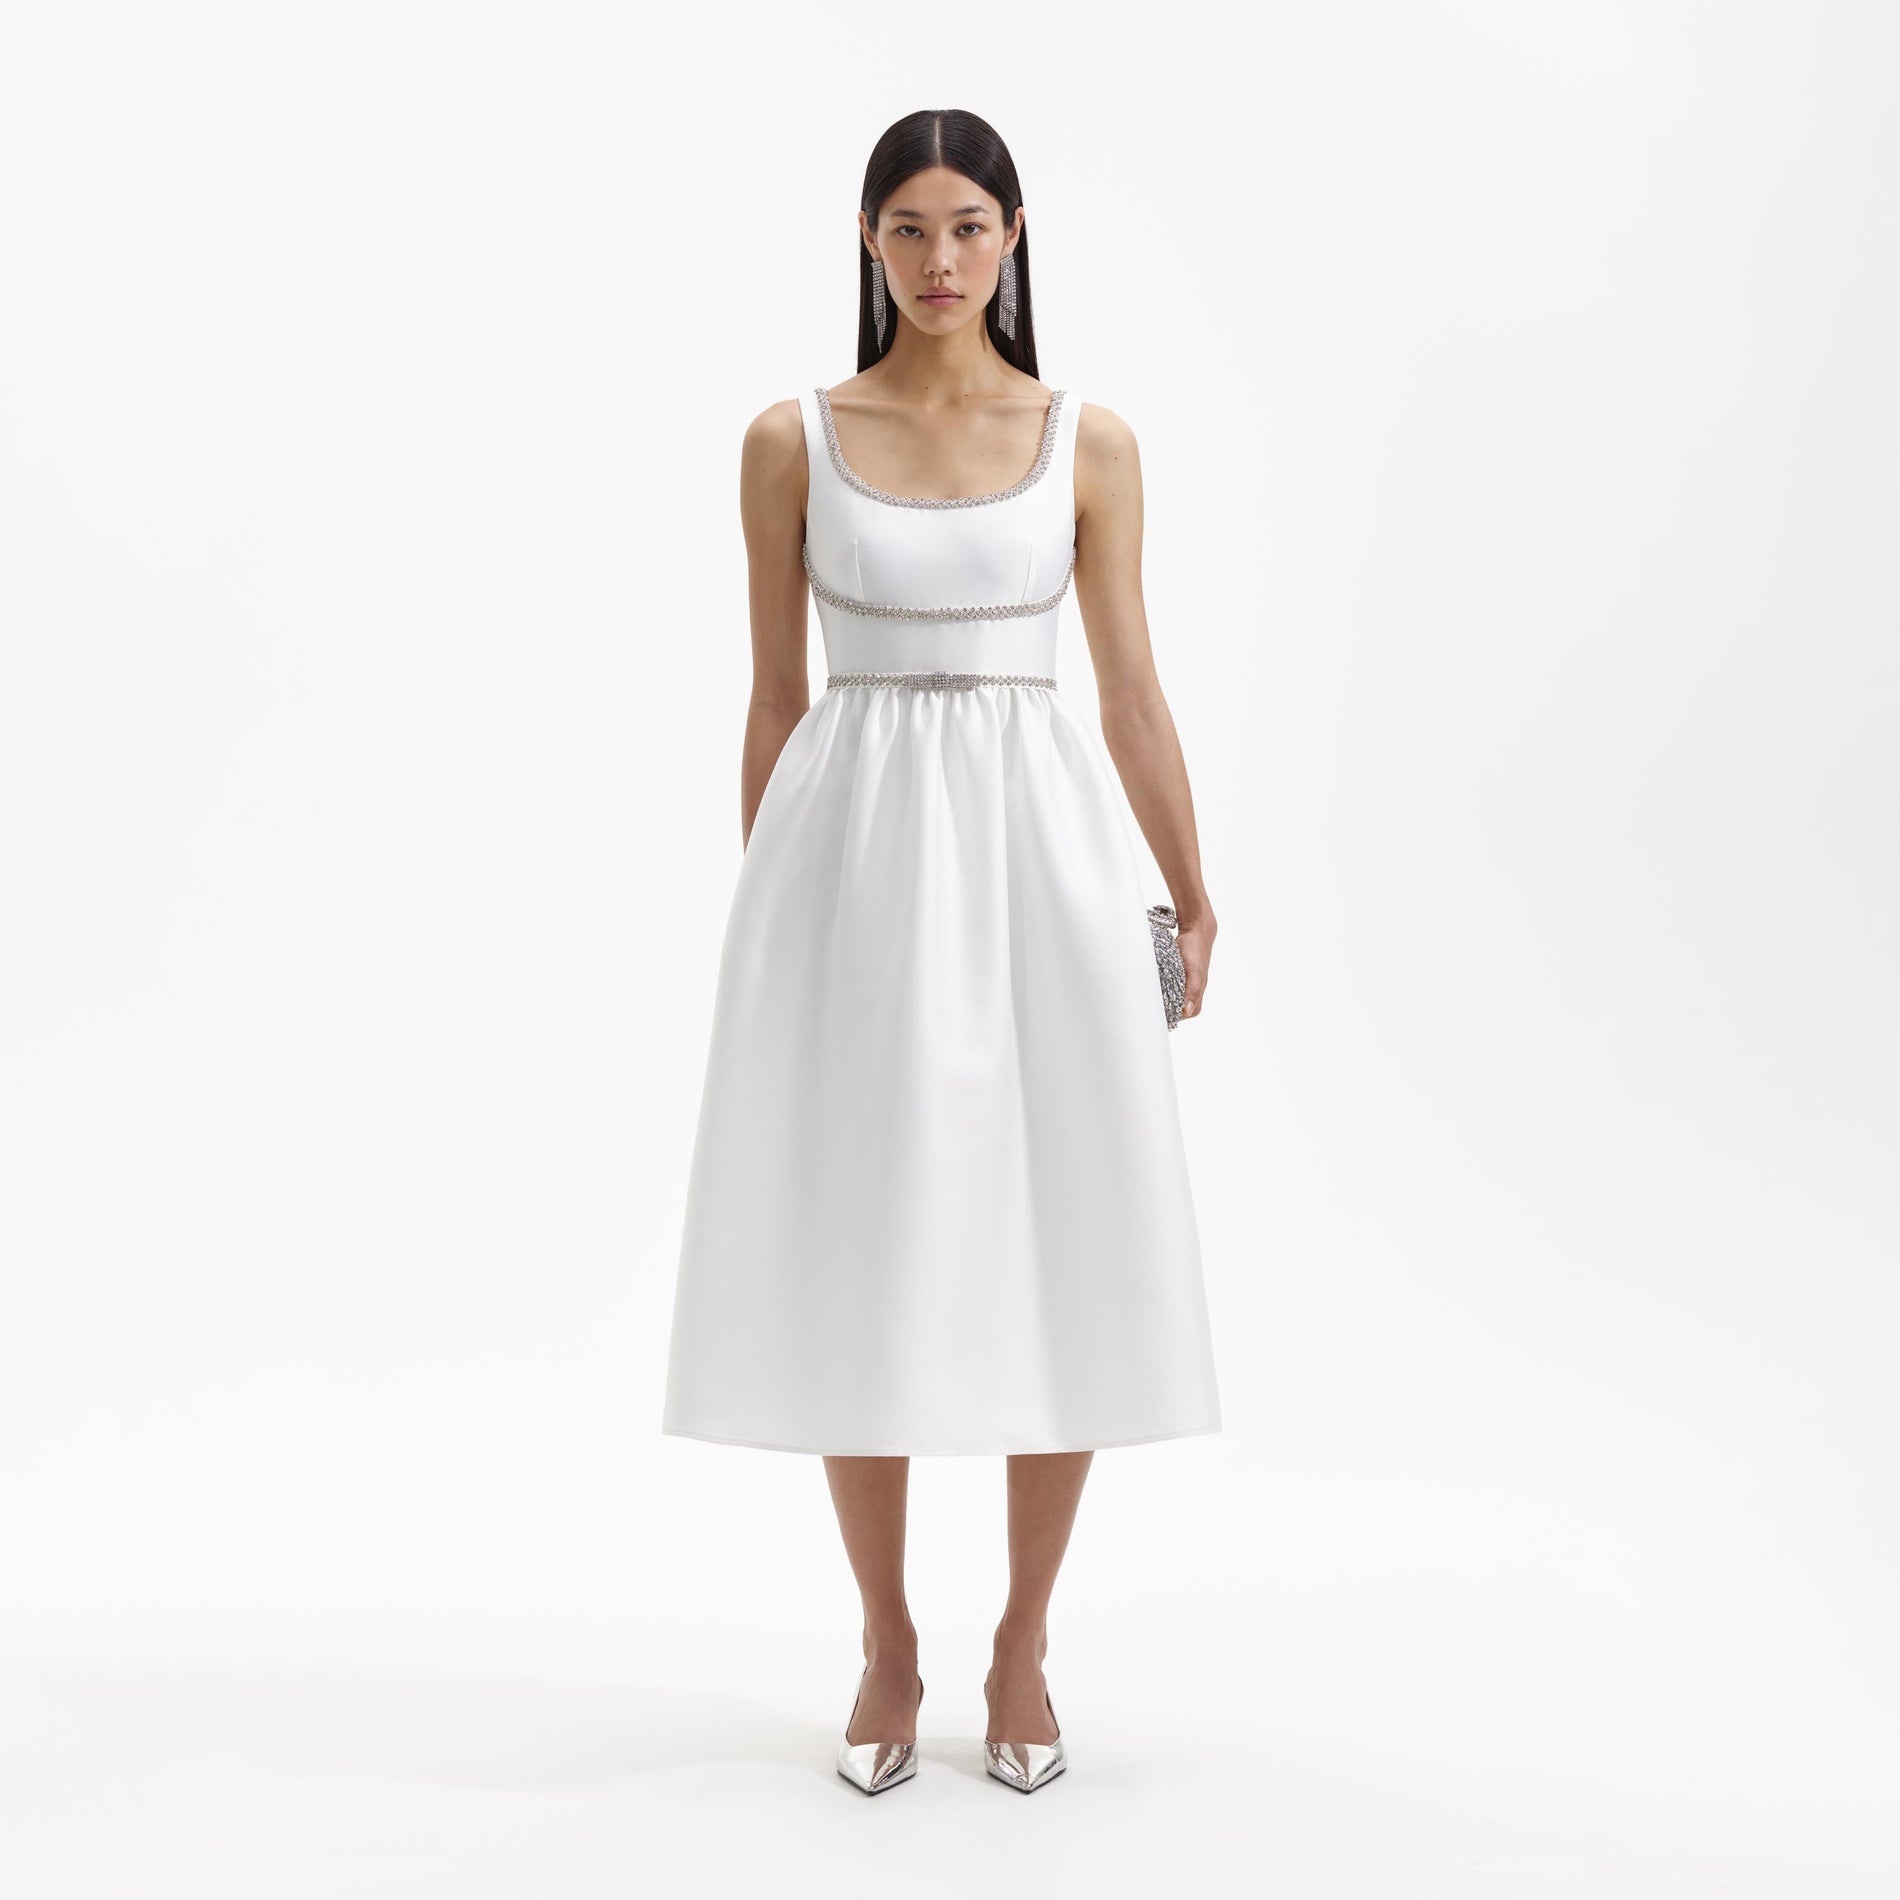 A Woman wearing the White Taffeta A Line Midi Dress